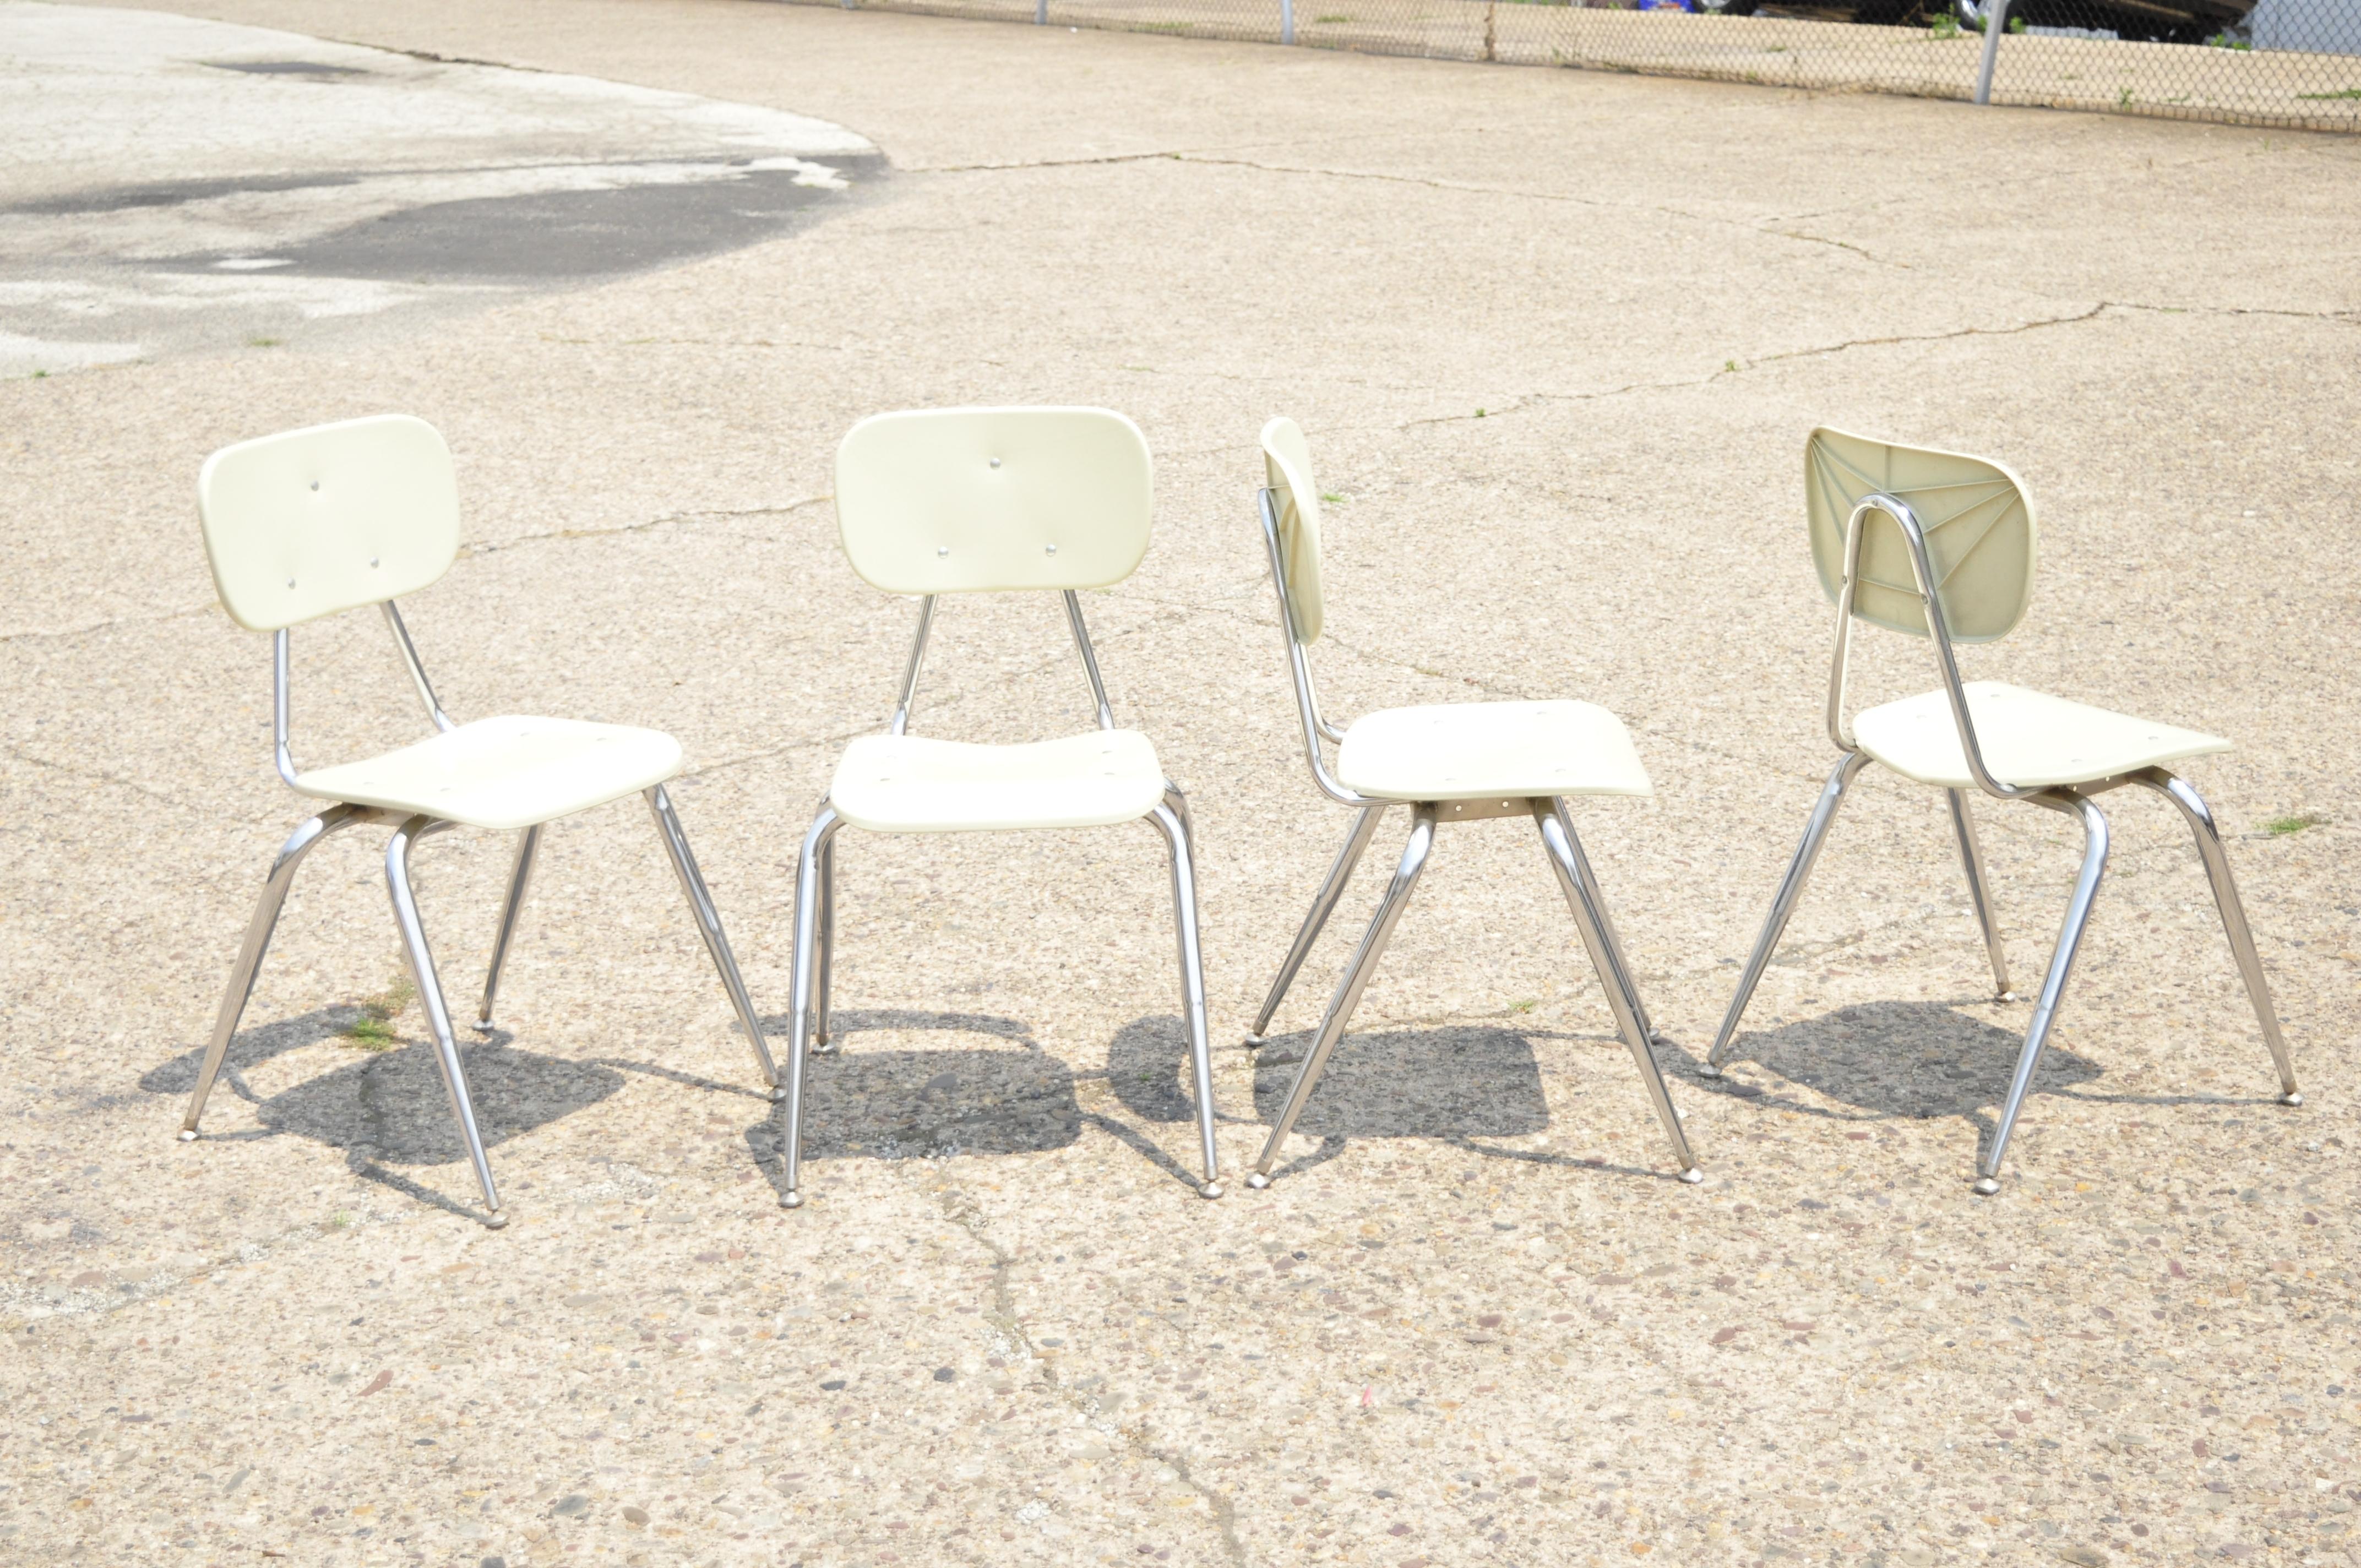 Vieille chaise d'école empilable en plastique moulé beige avec base en métal chromé - Simple. L'annonce est pour (1) chaise. Cet article présente un dossier et un siège en plastique moulé, des pieds en métal, une forme empilable, une finition beige